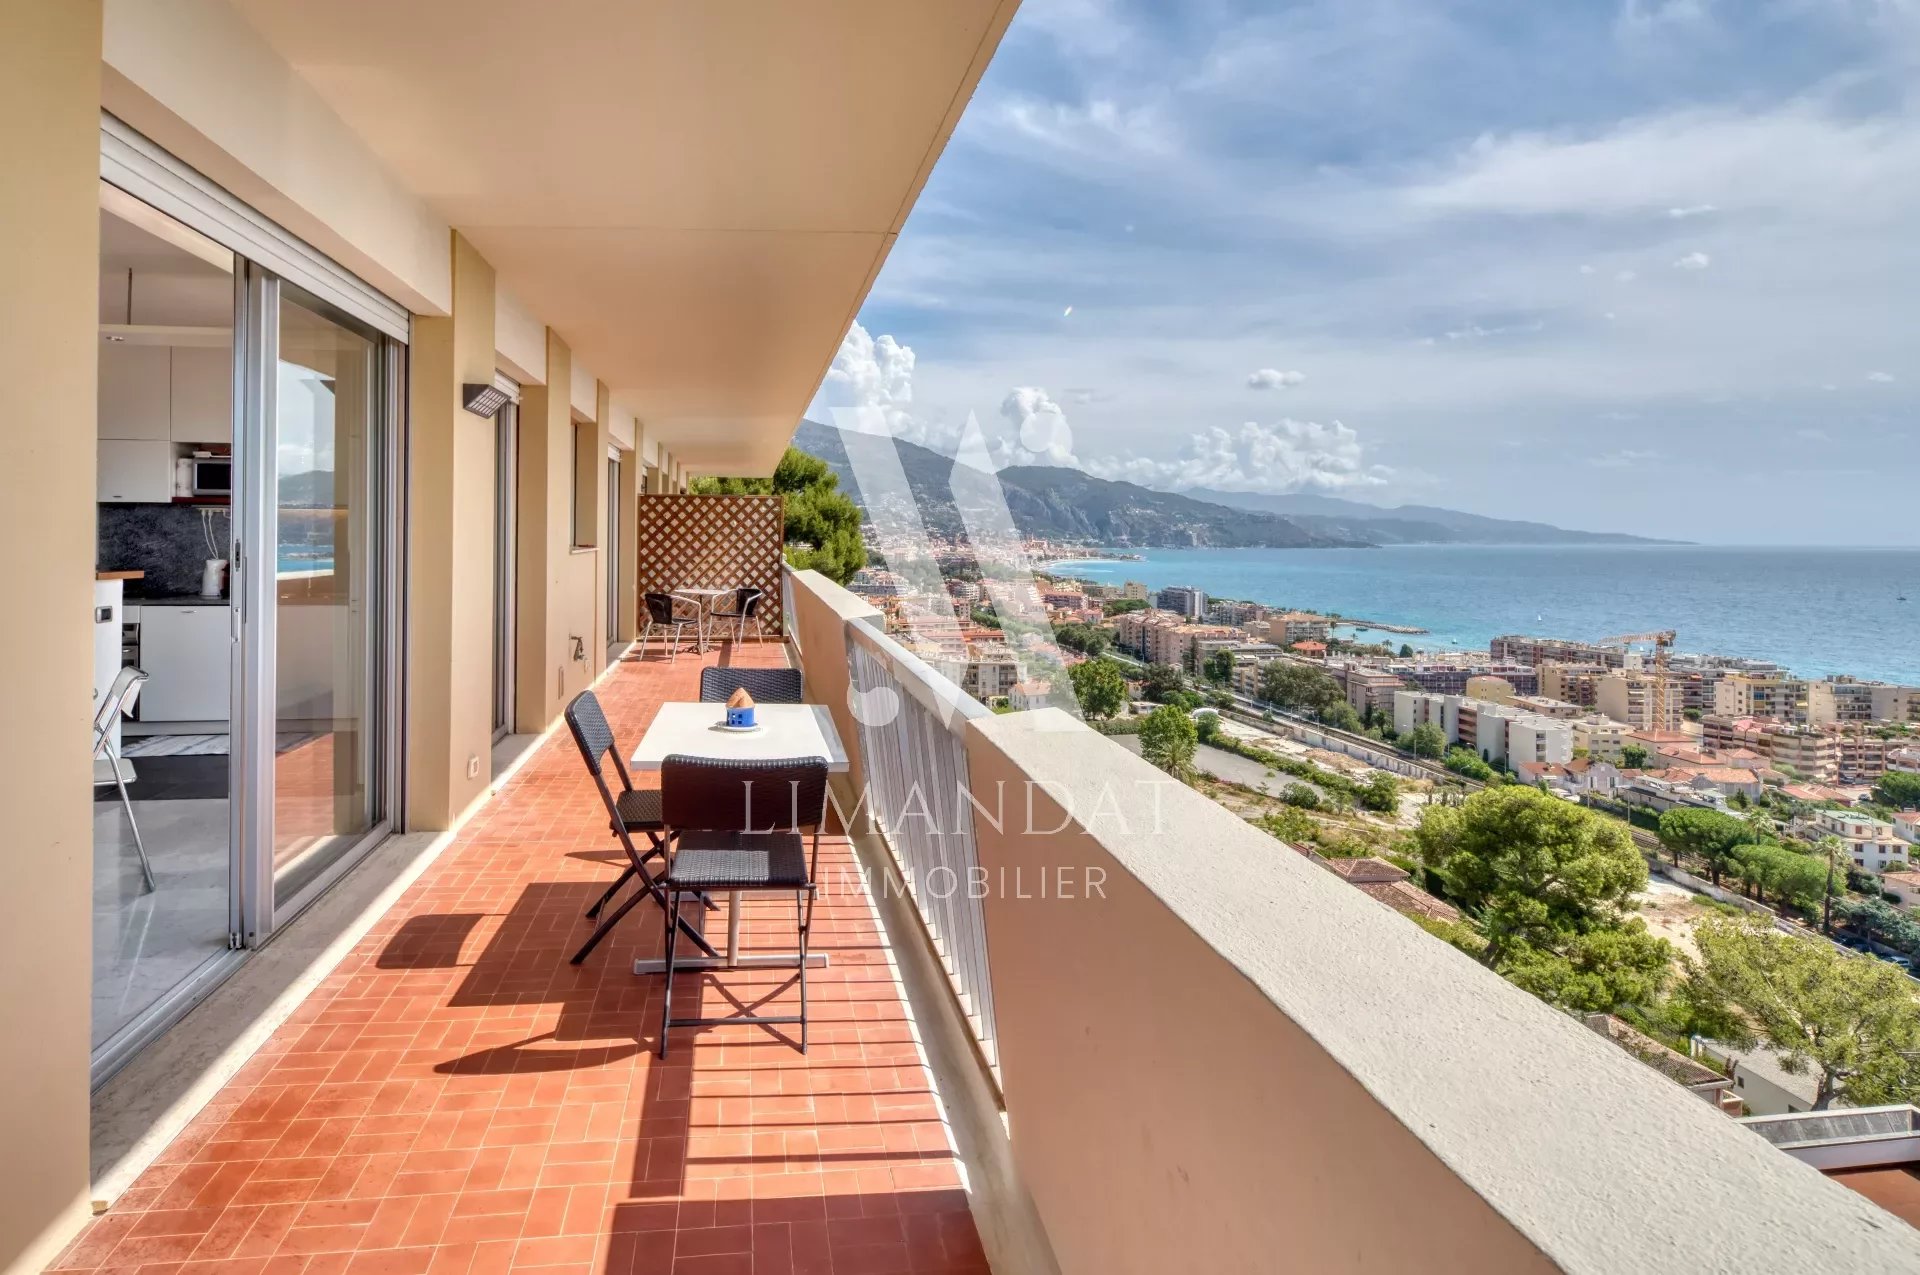 Roquebrune Cap Martin - 2 rooms 56 m2, corner terrace 33m2 sea view, cellar, parking